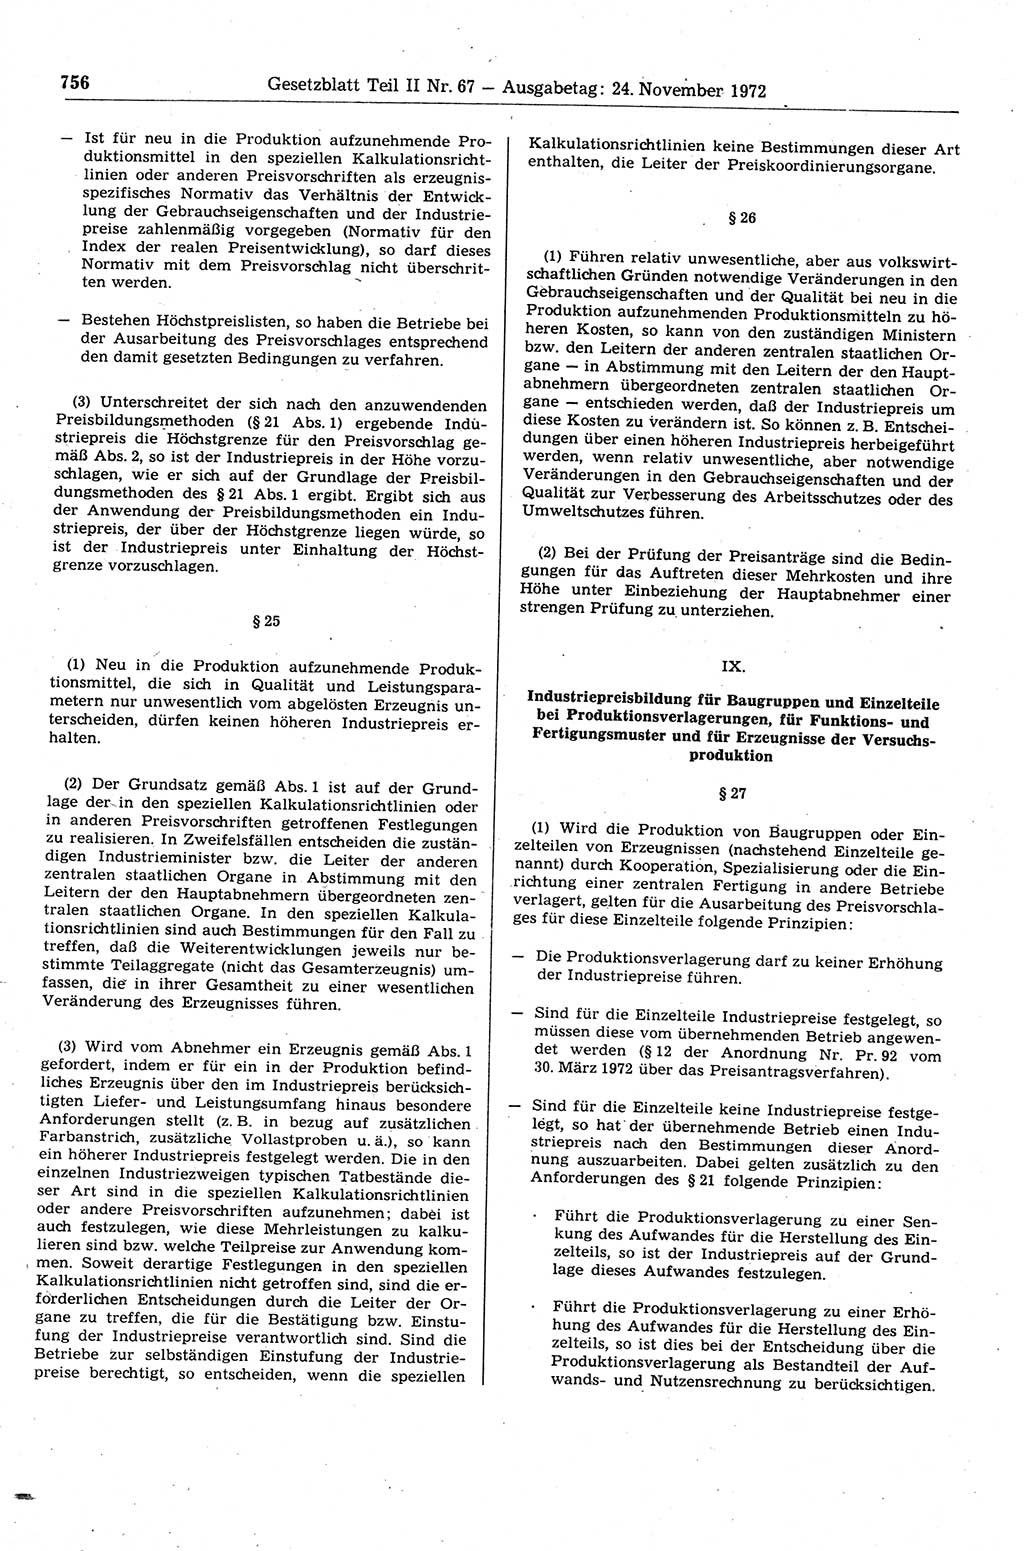 Gesetzblatt (GBl.) der Deutschen Demokratischen Republik (DDR) Teil ⅠⅠ 1972, Seite 756 (GBl. DDR ⅠⅠ 1972, S. 756)